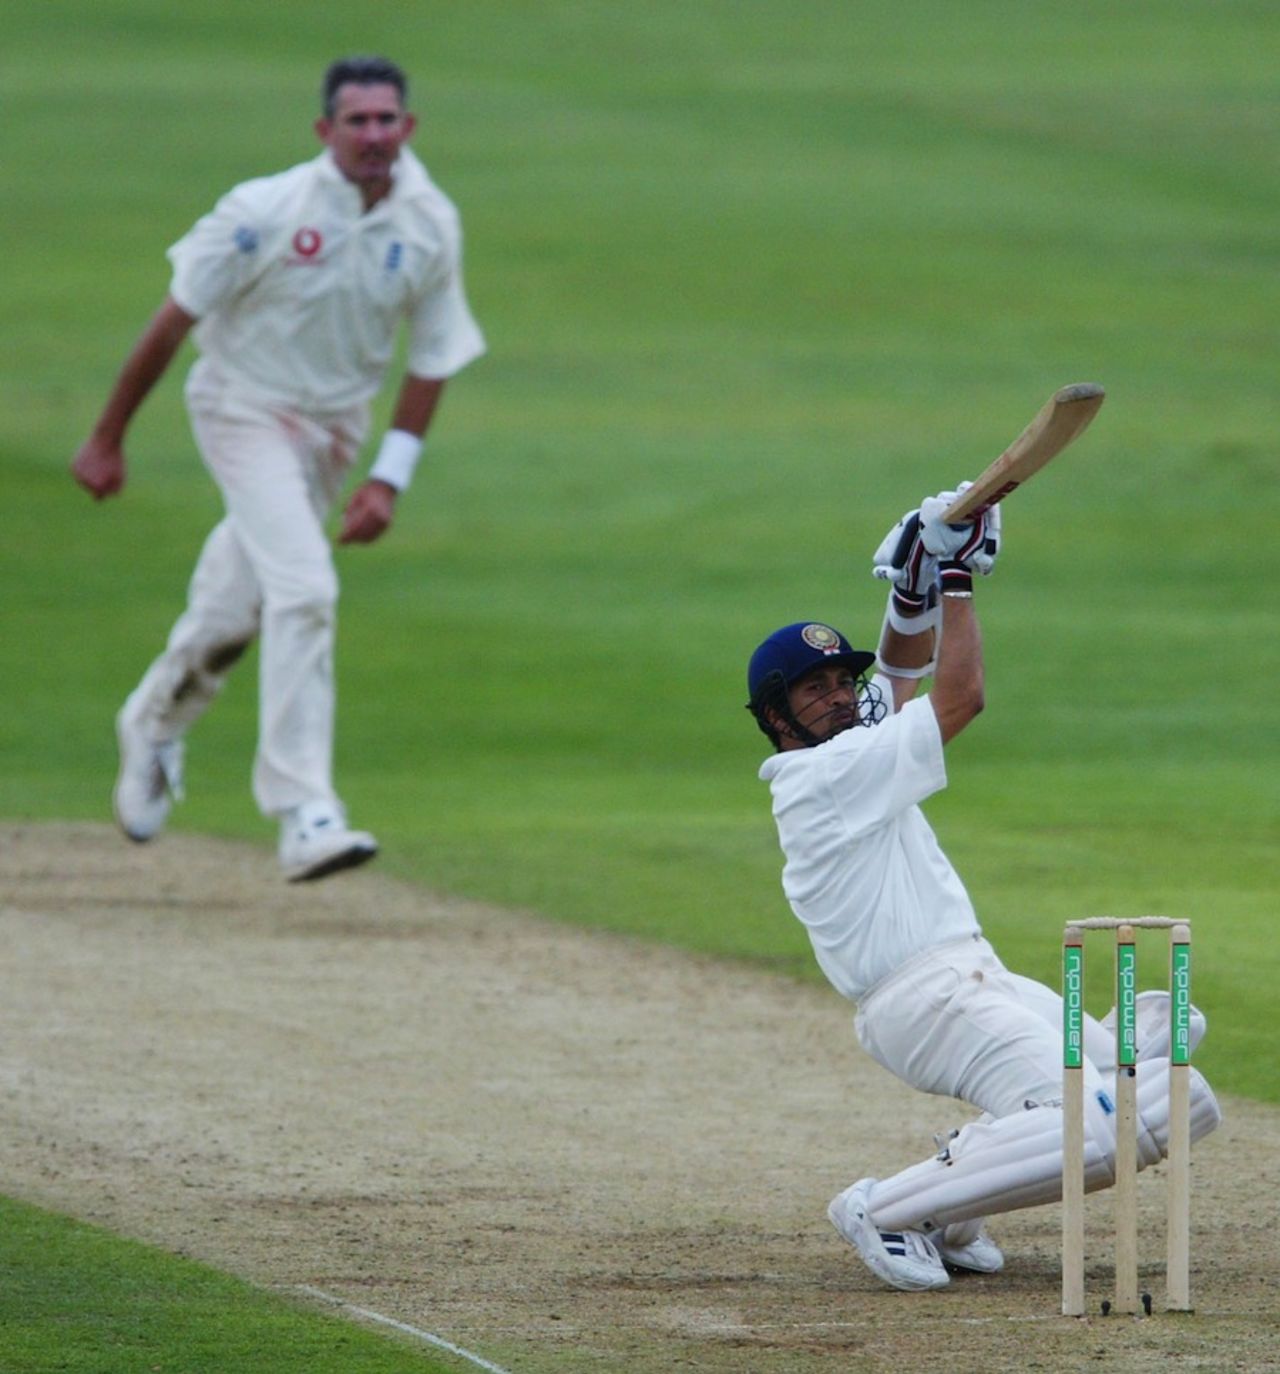 Sachin Tendulkar gets cheeky against Andrew Caddick, England v India, 3rd Test, Headingley, 2nd day, August 23, 2003